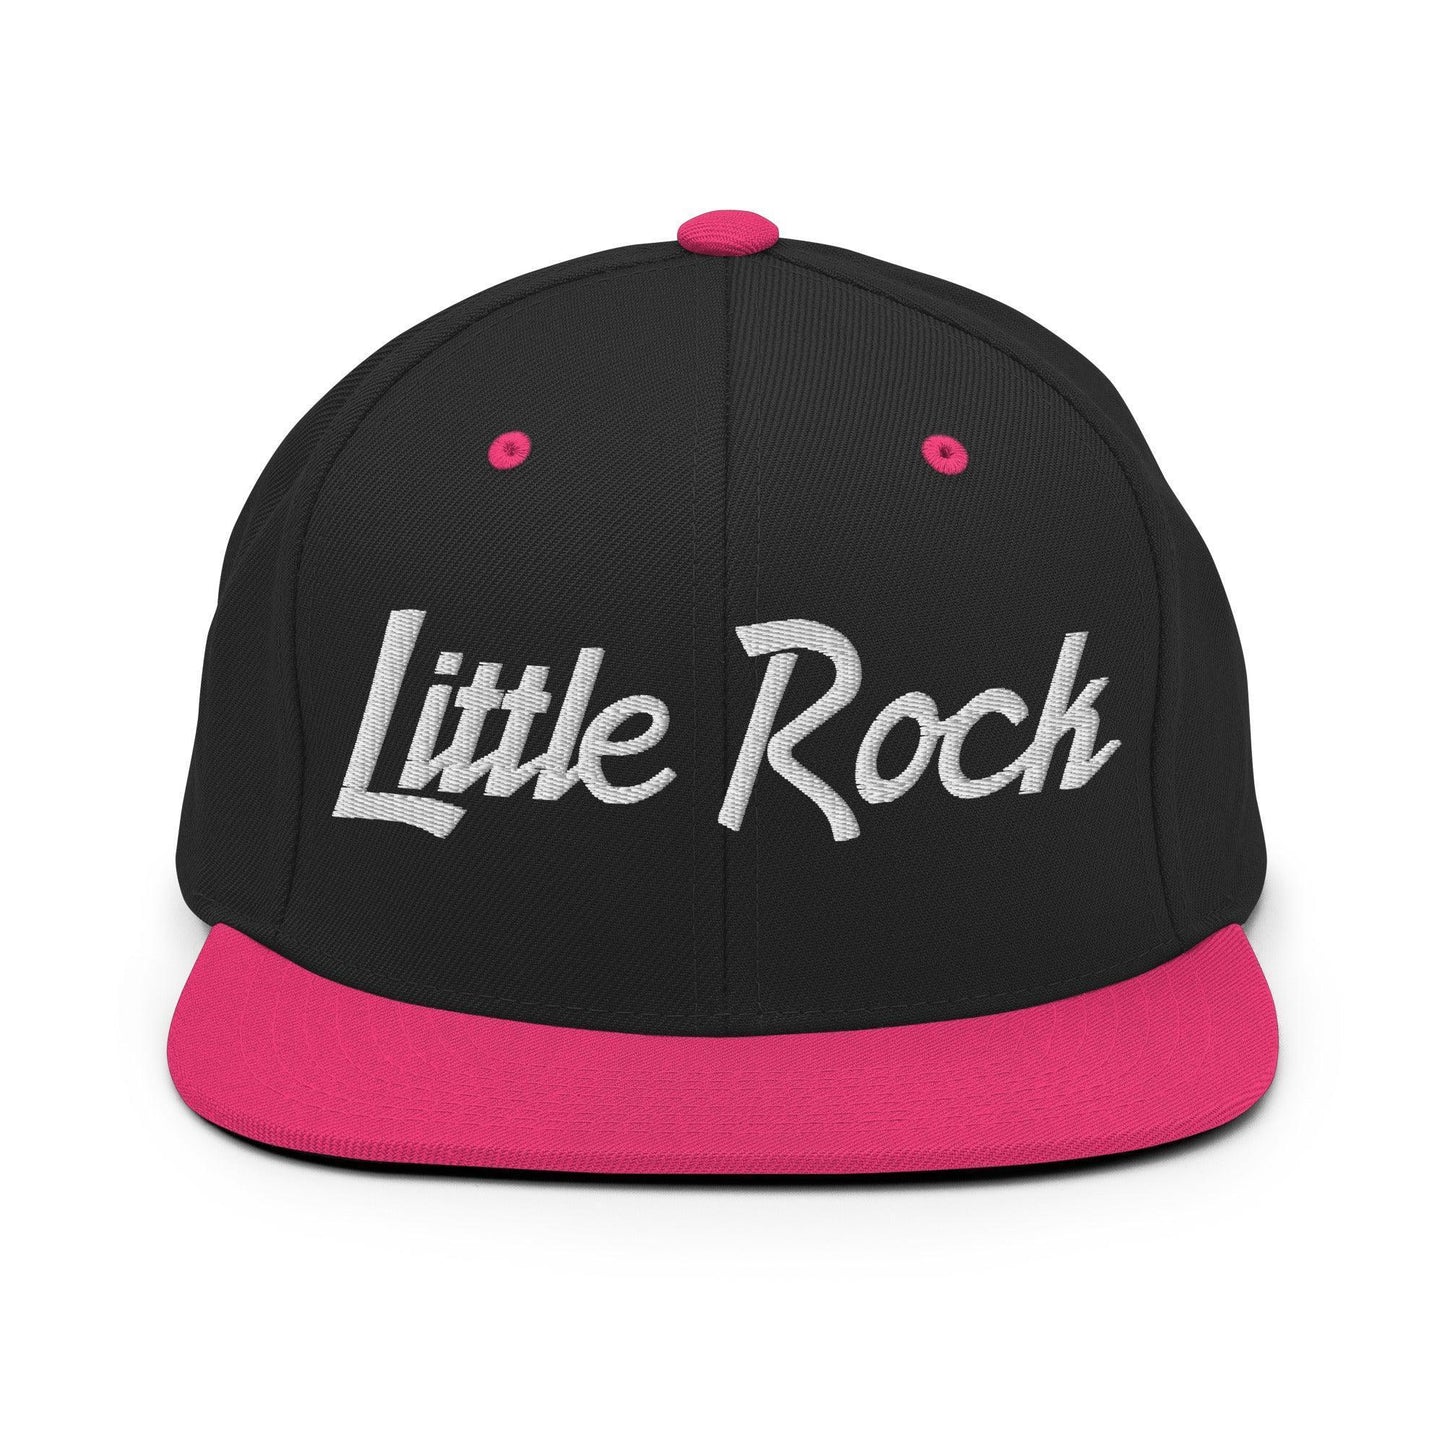 Little Rock Script Snapback Hat Black Neon Pink